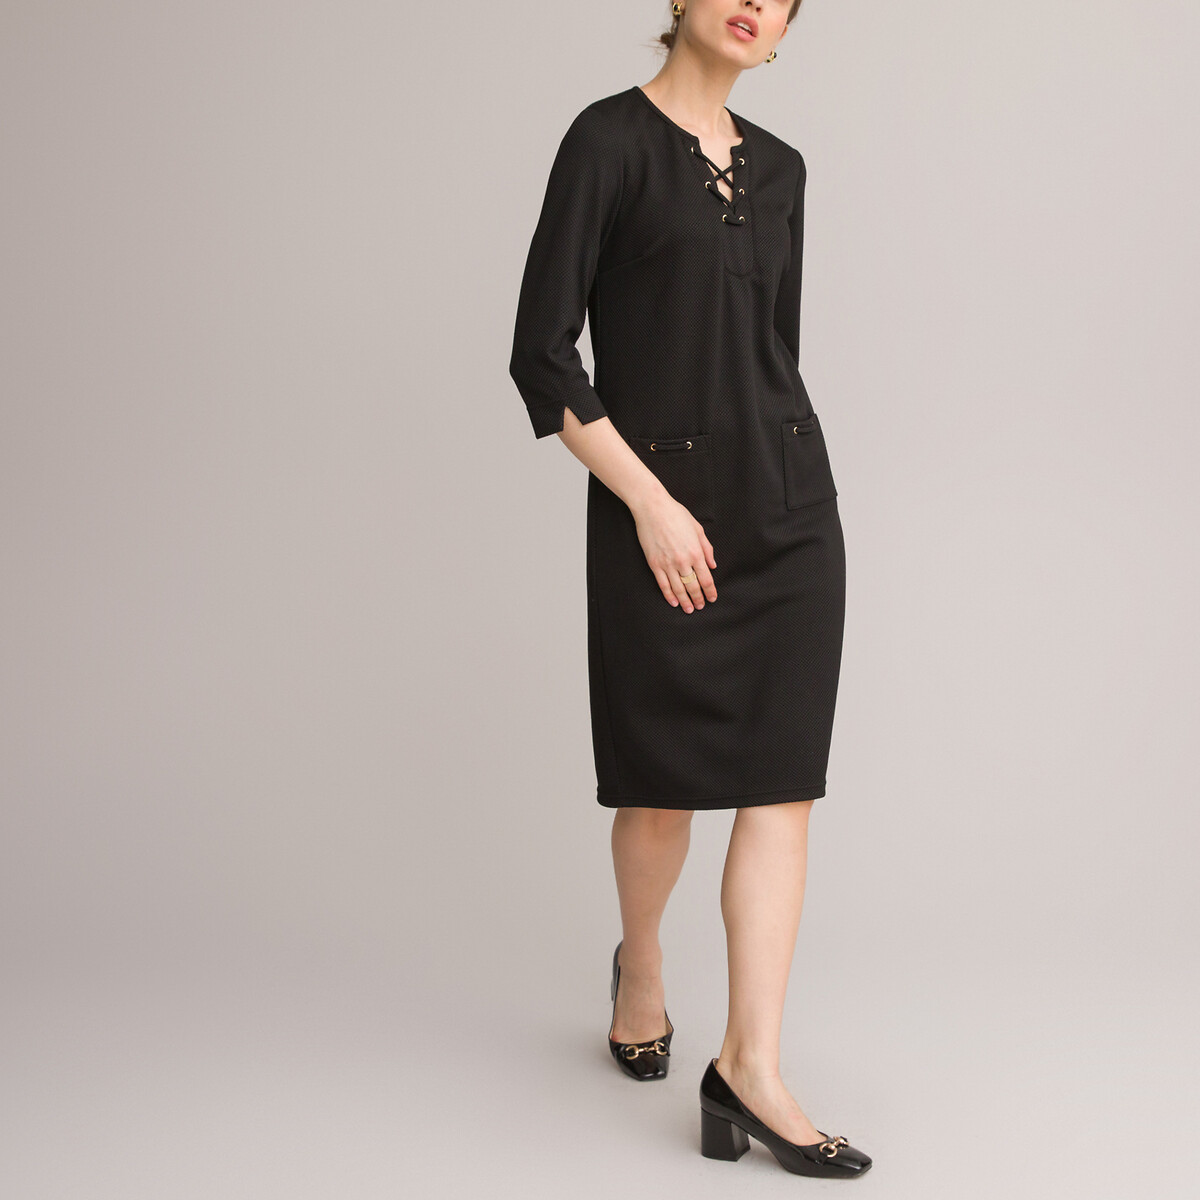 Платье ANNE WEYBURN Платье Прямое средней длины рукава 34 52 черный, размер 52 - фото 2